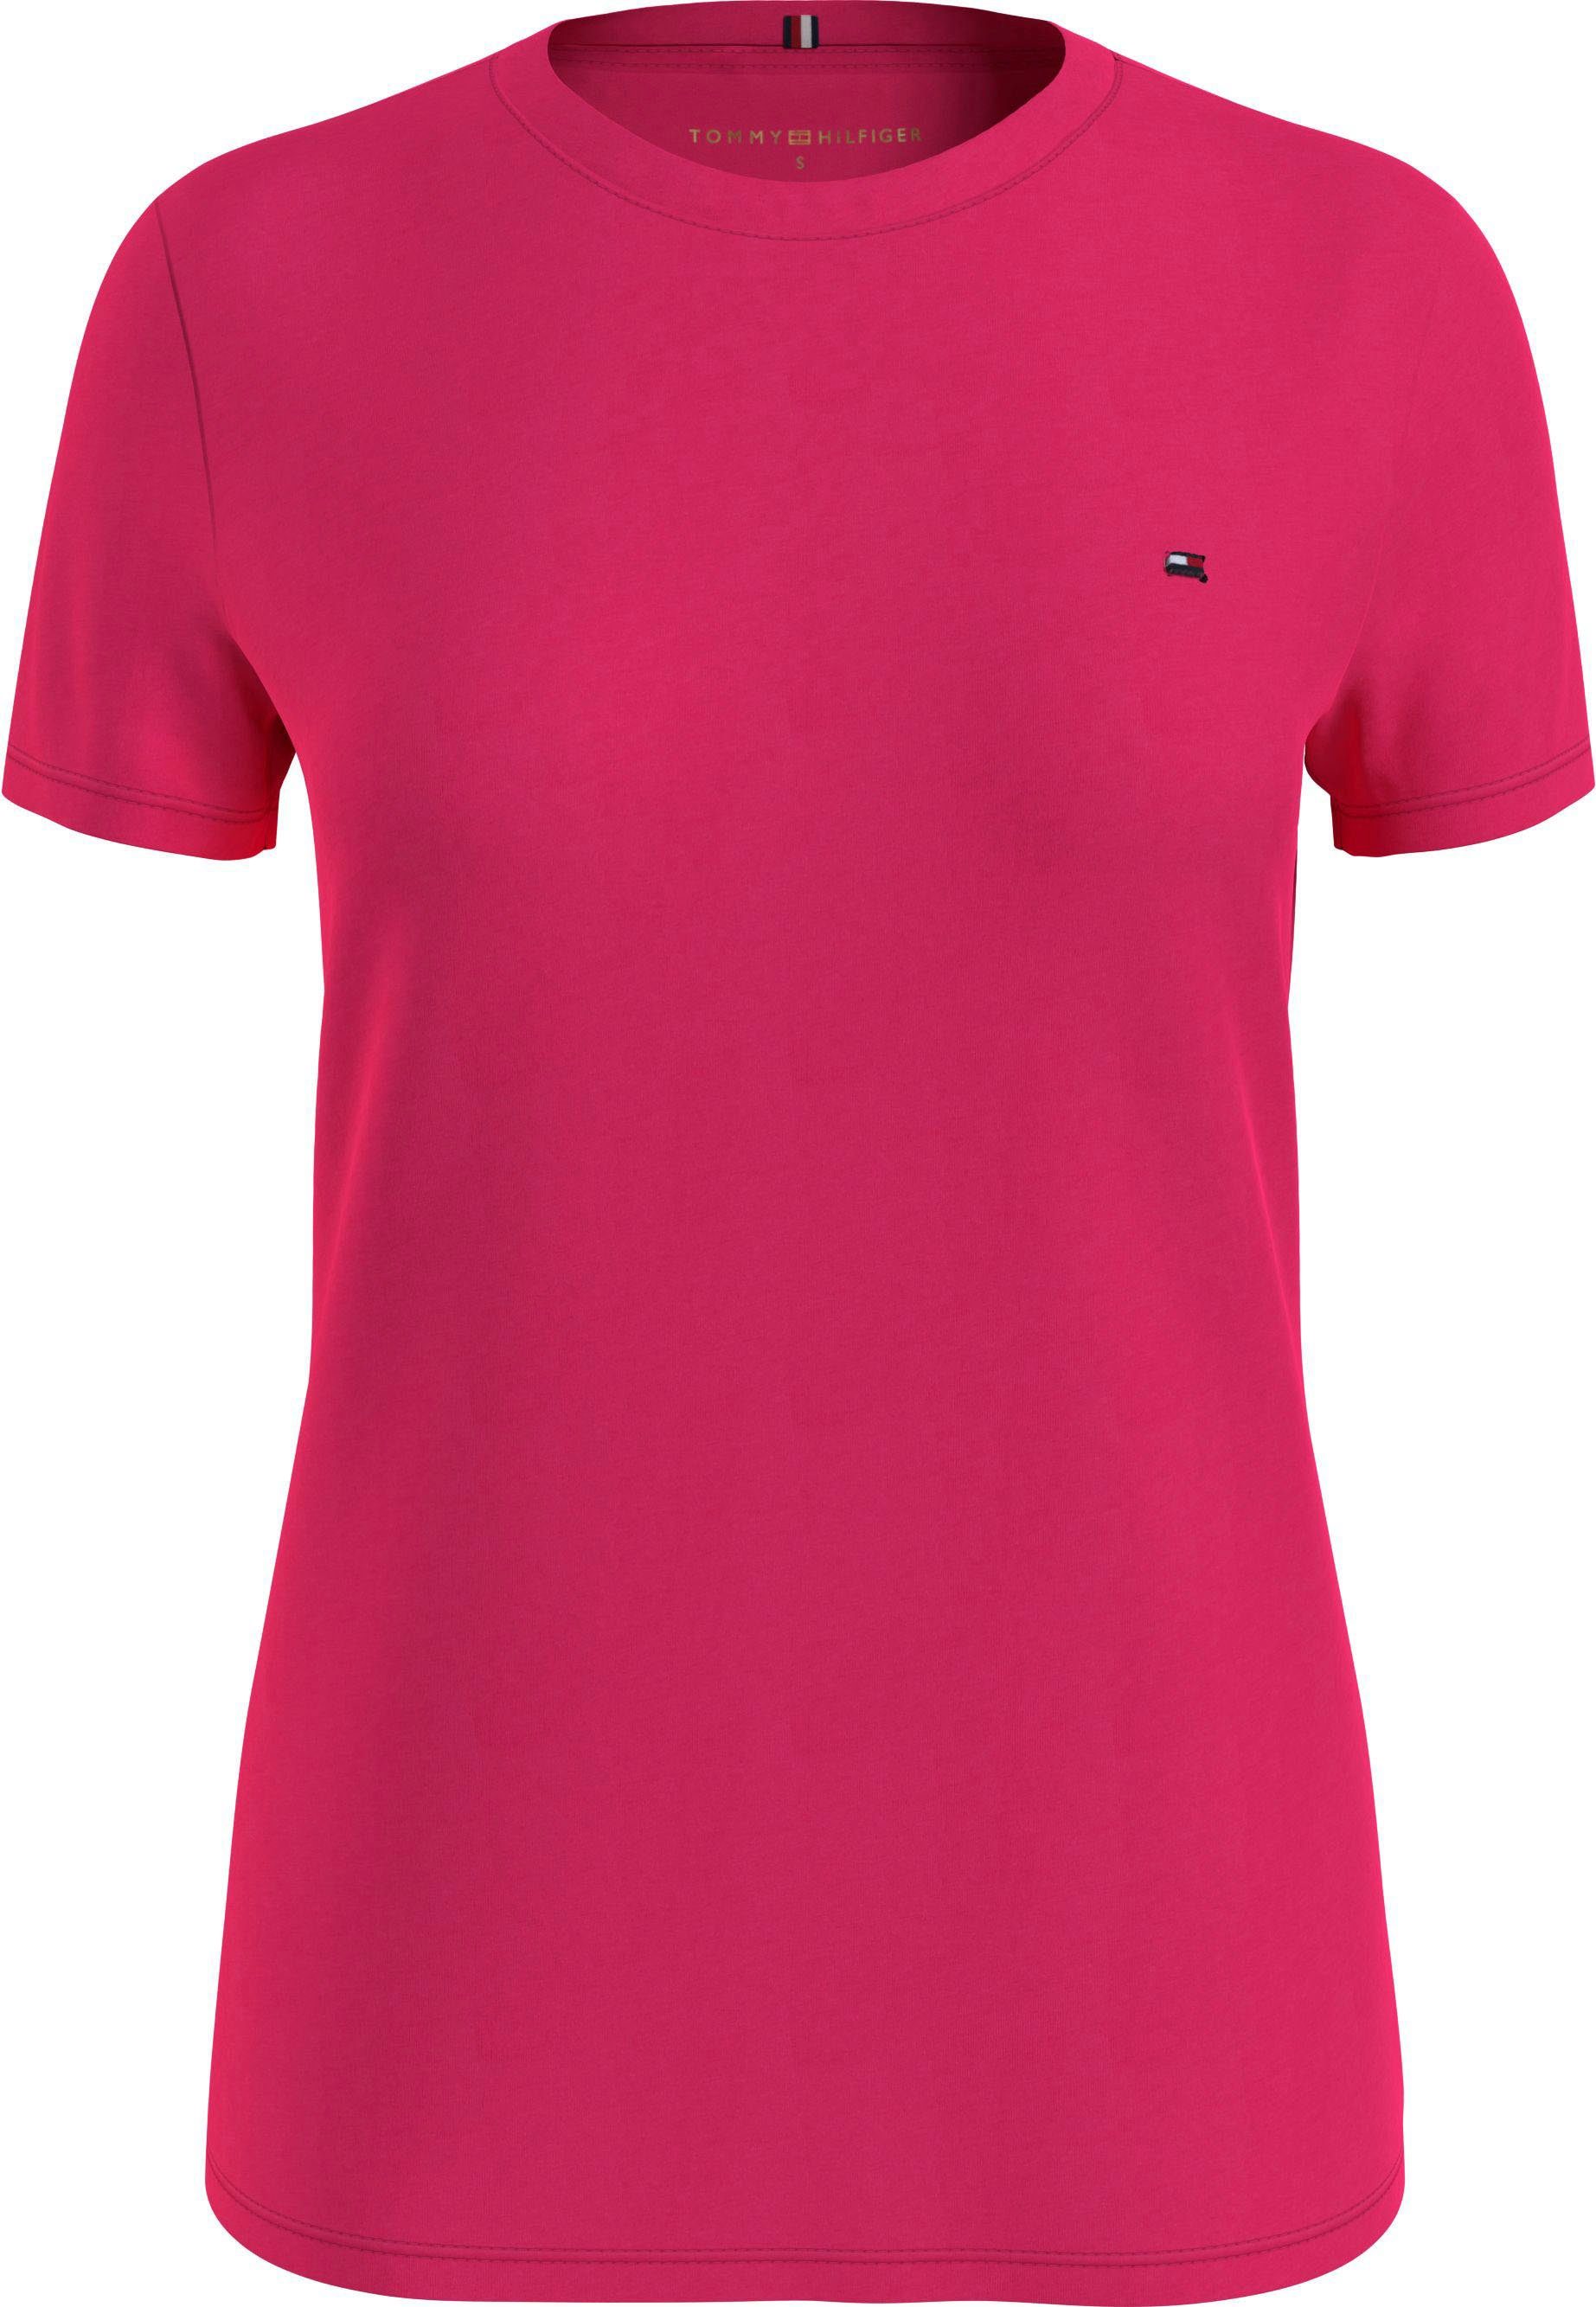 Tommy Hilfiger T-Shirt NEW CREW NECK TEE mit Tommy Hilfiger Markenlabel Pink-Splendor